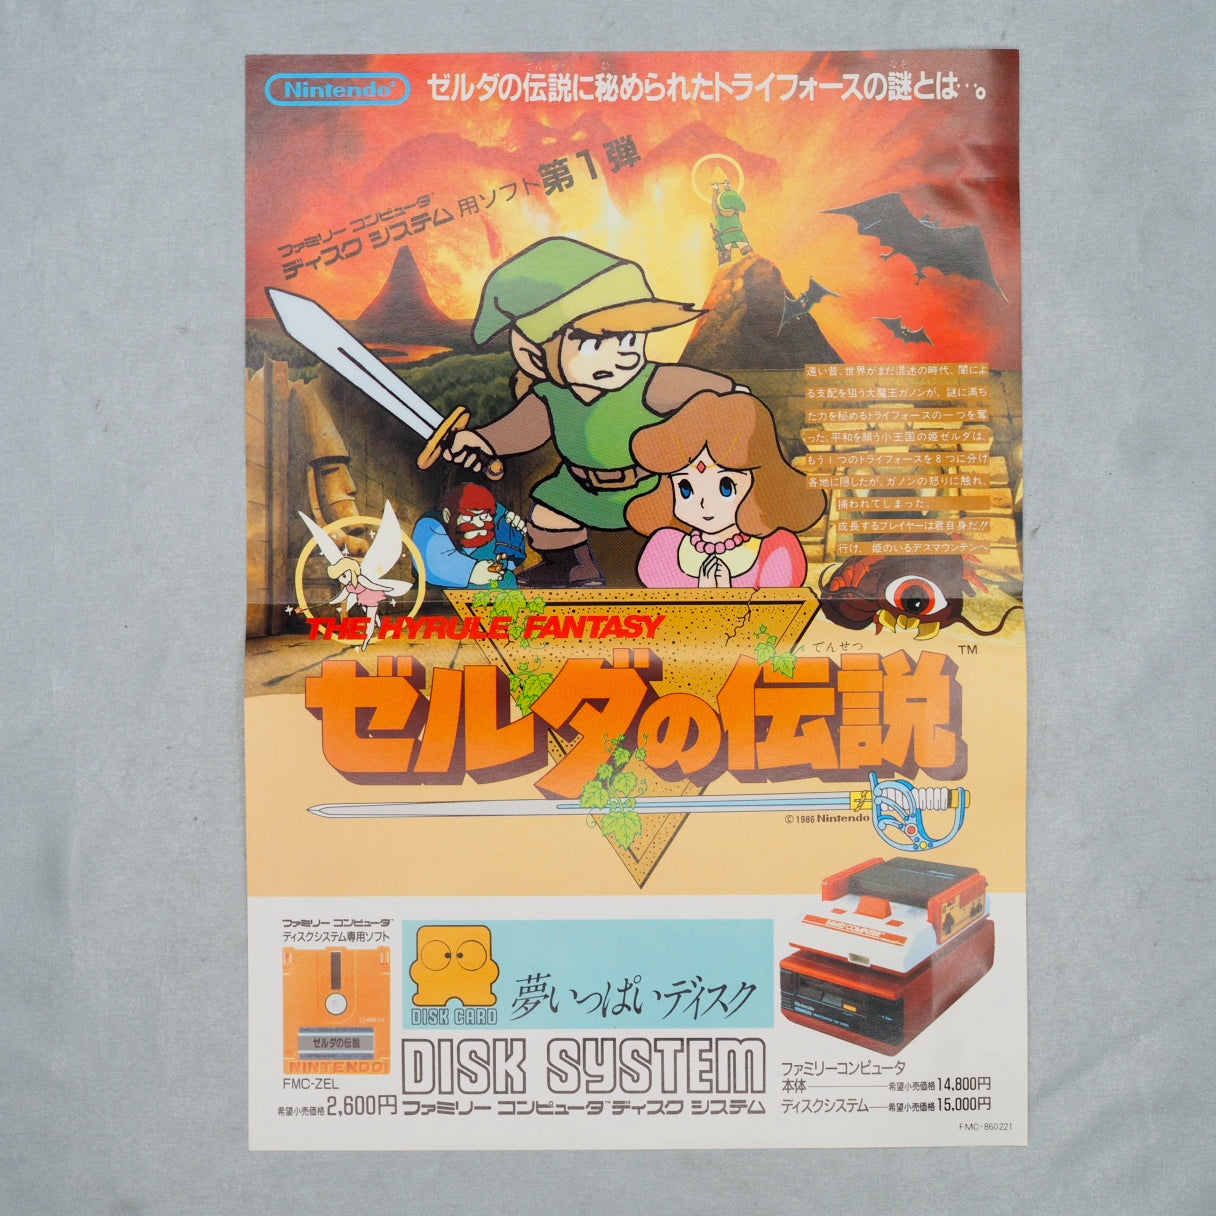 LEGEND OF ZELDA 1 Nintendo Famicom disk Catalog Flyer Leaflet Paper Poster